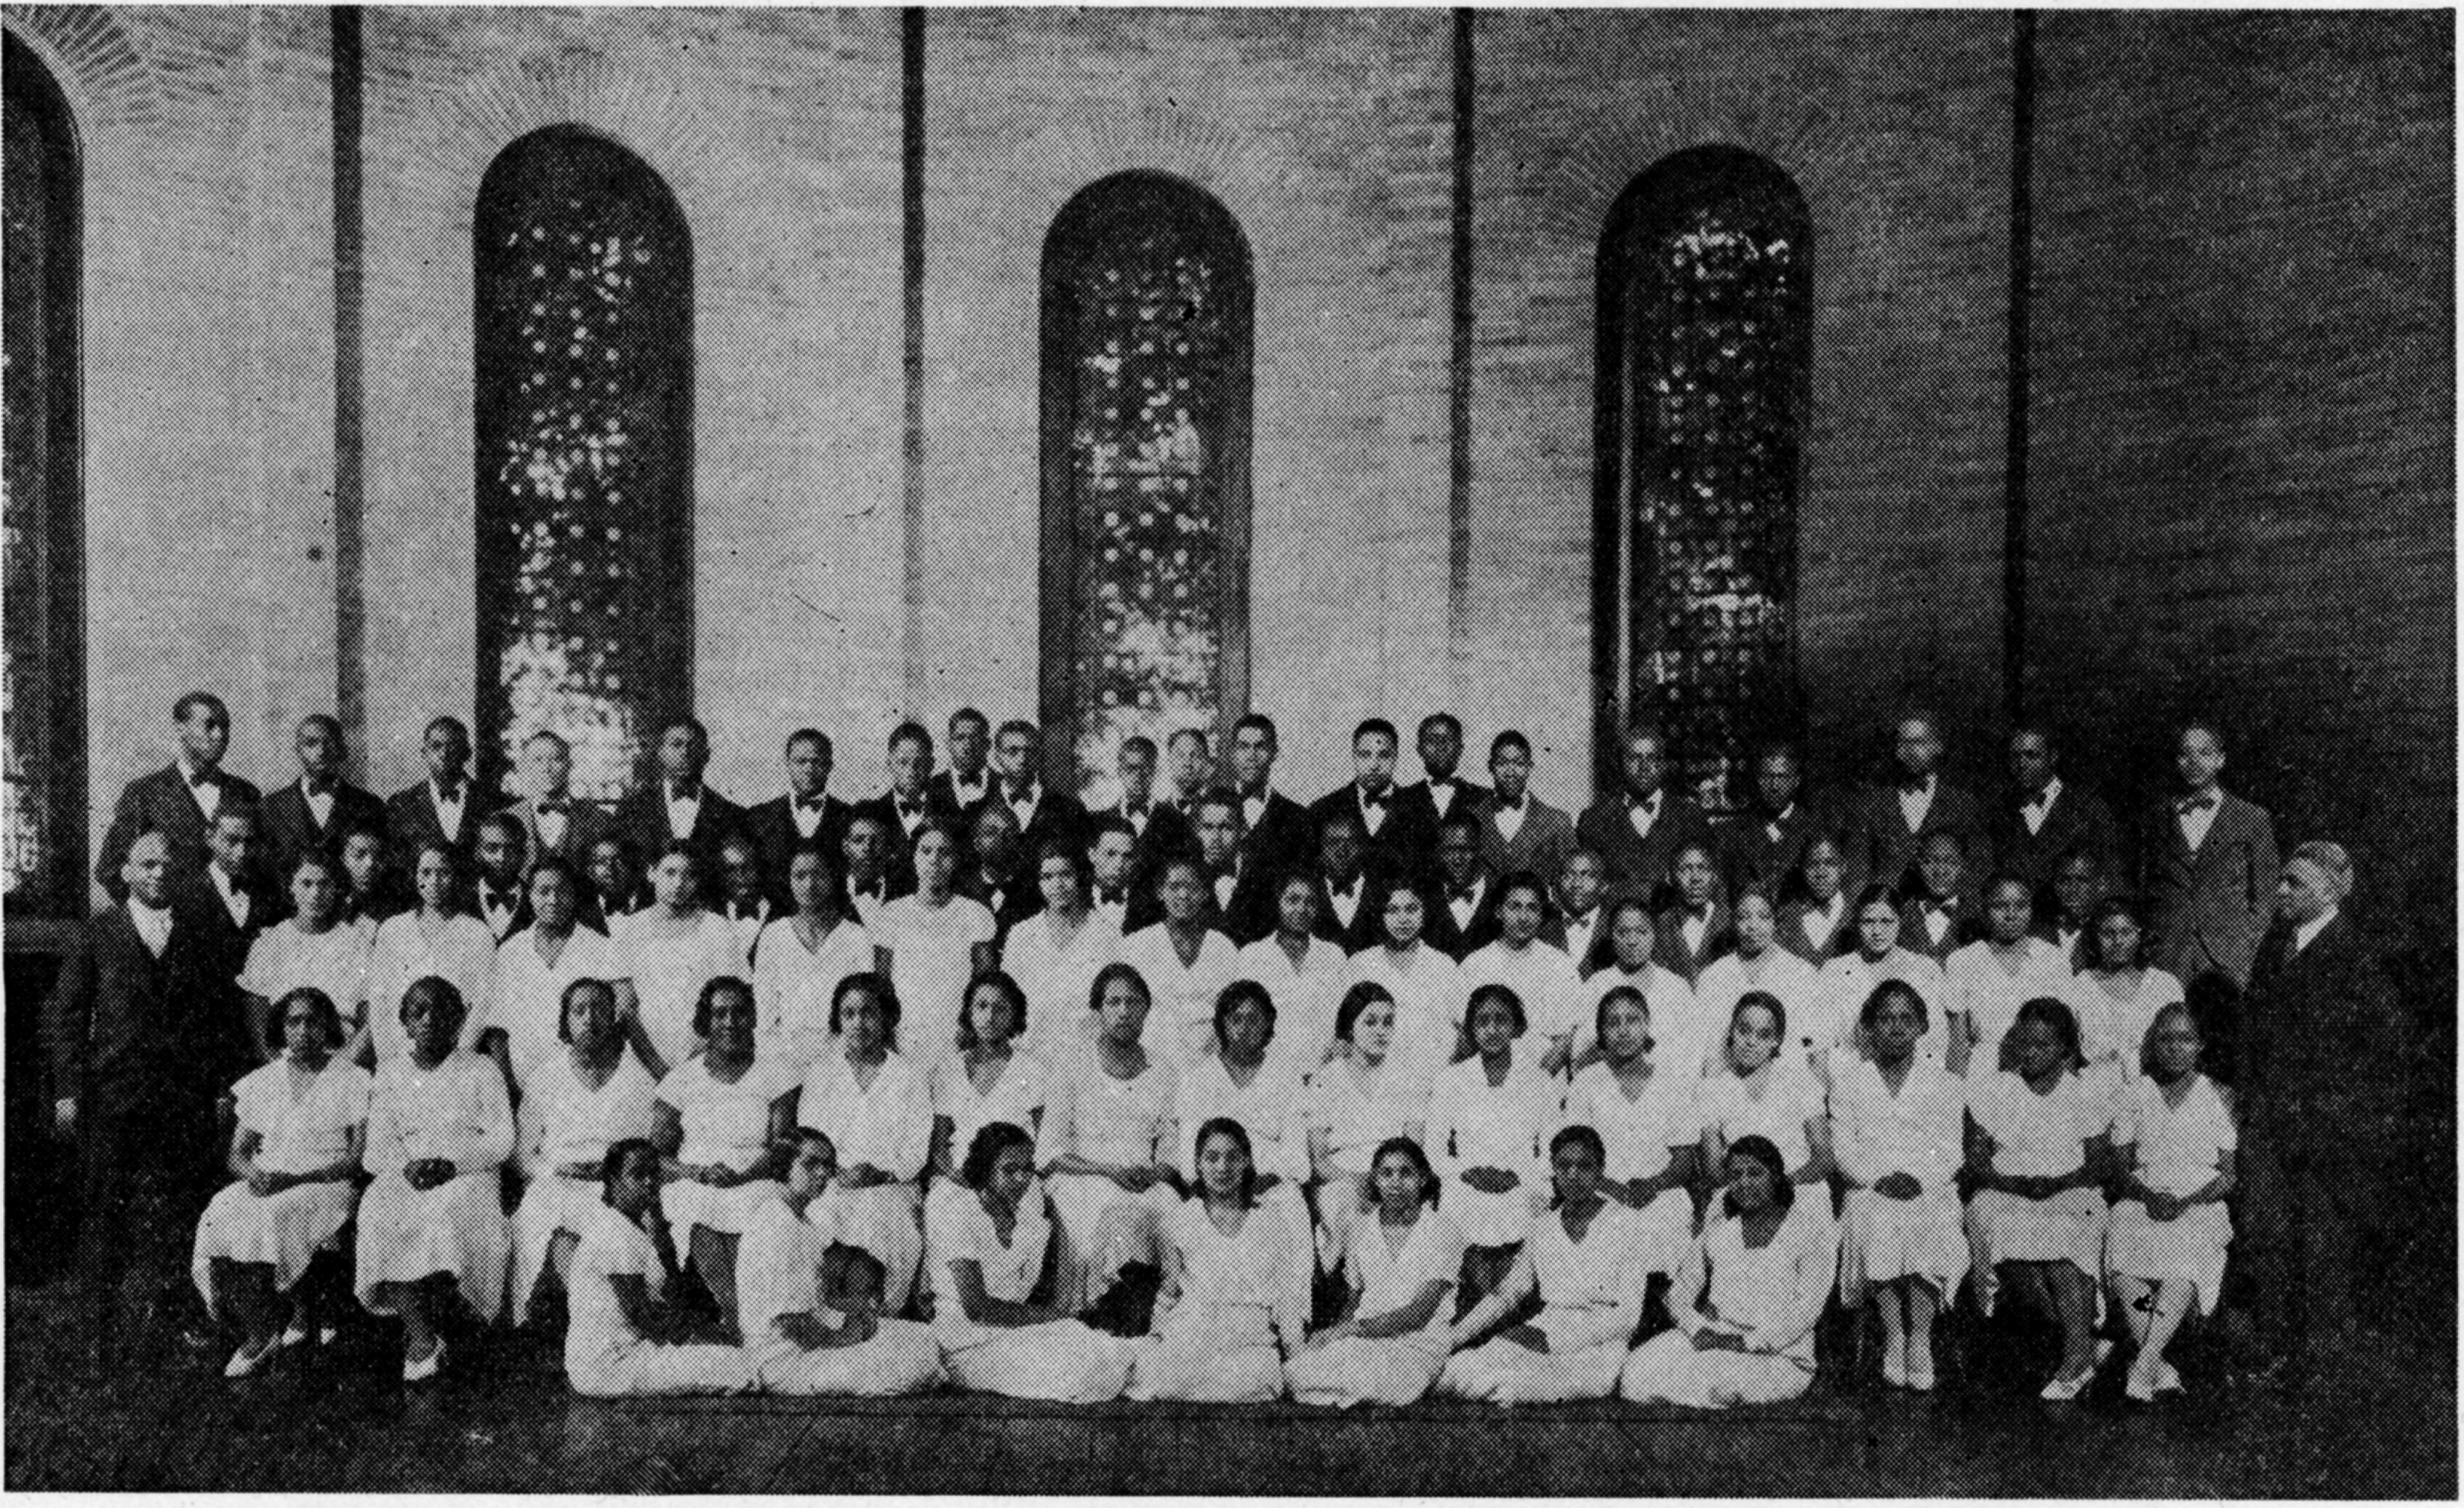 photograph of the choir inside a church